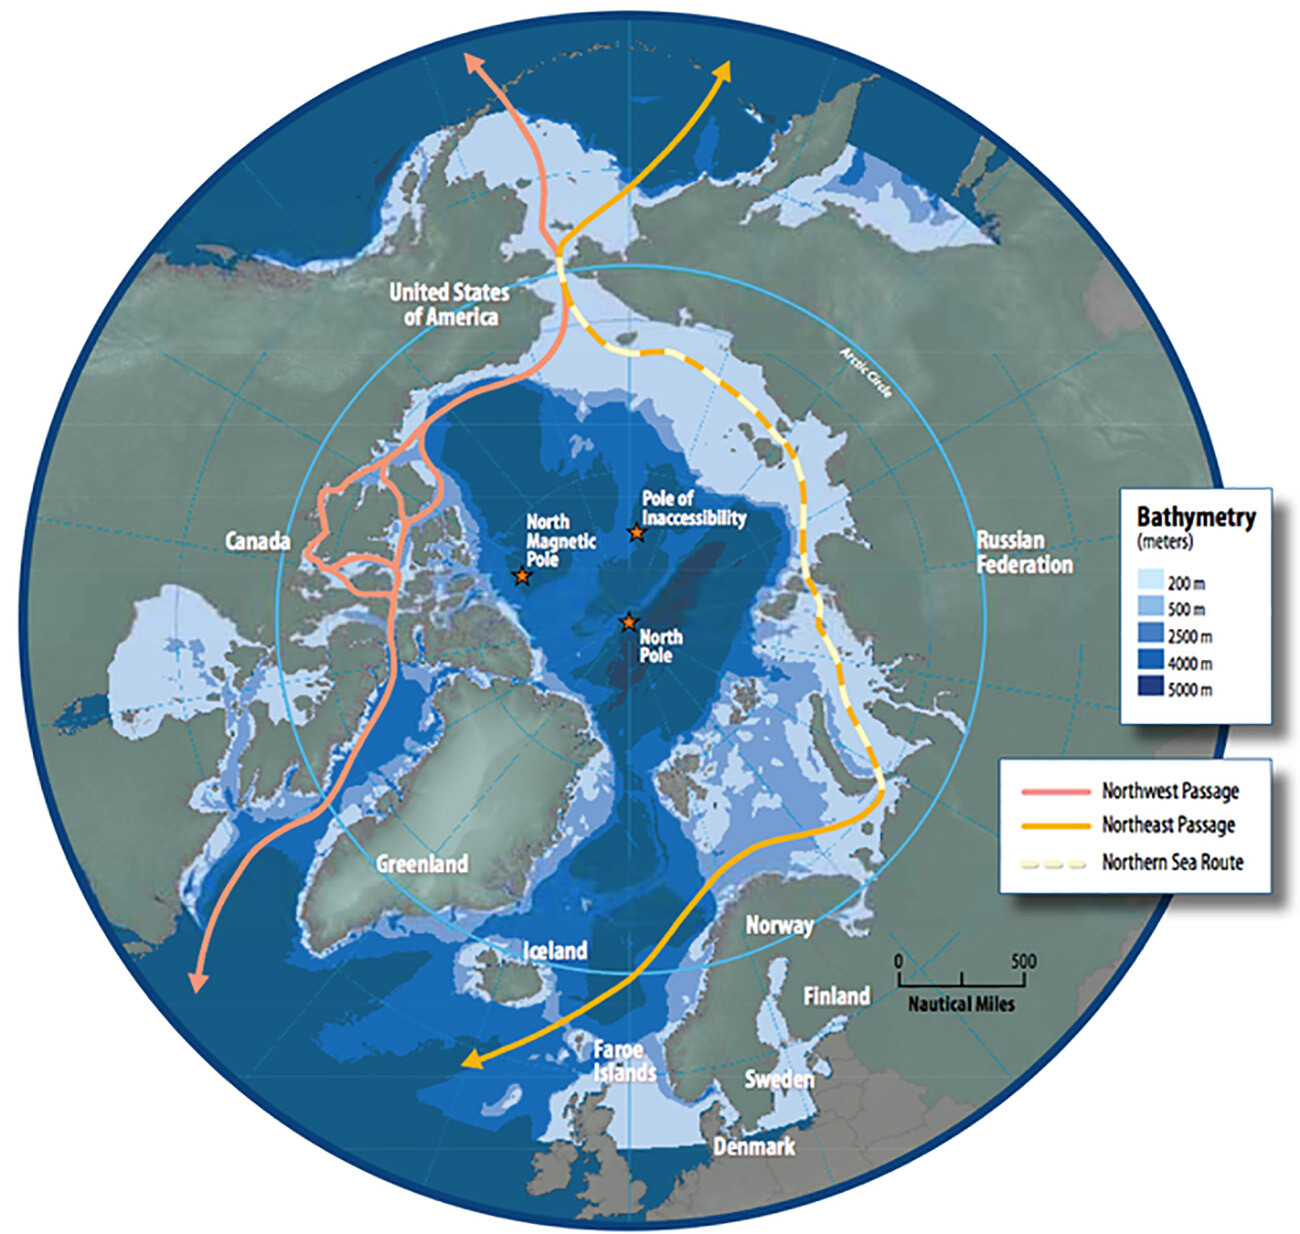 La mappa della regione artica che mostra le rotte di navigazione del Passaggio a Nord-Est, della Rotta del Mare del Nord e del Passaggio a Nord-Ovest